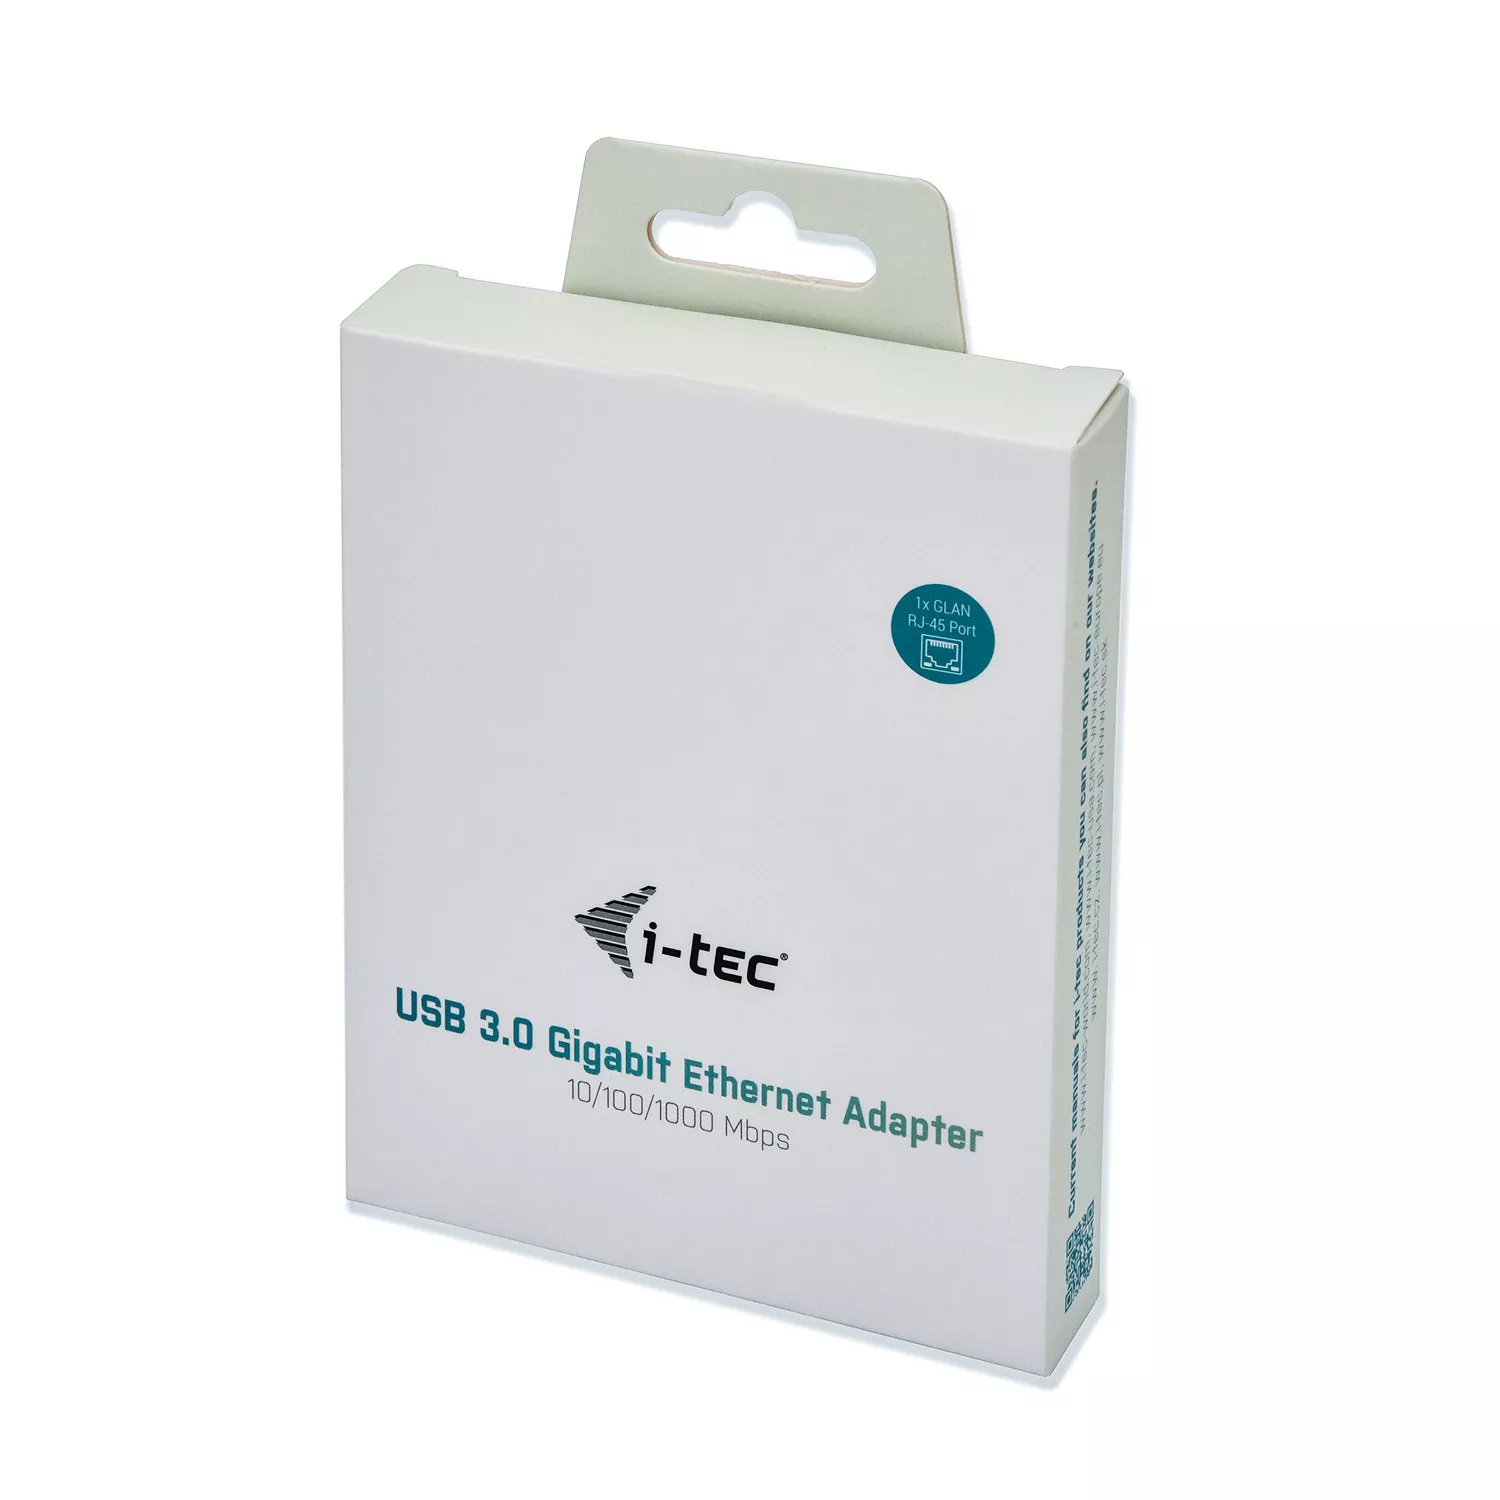 Vente I-TEC USB 3.0 Metal Gigabit Ethernet Adapter 1xUSB i-tec au meilleur prix - visuel 6